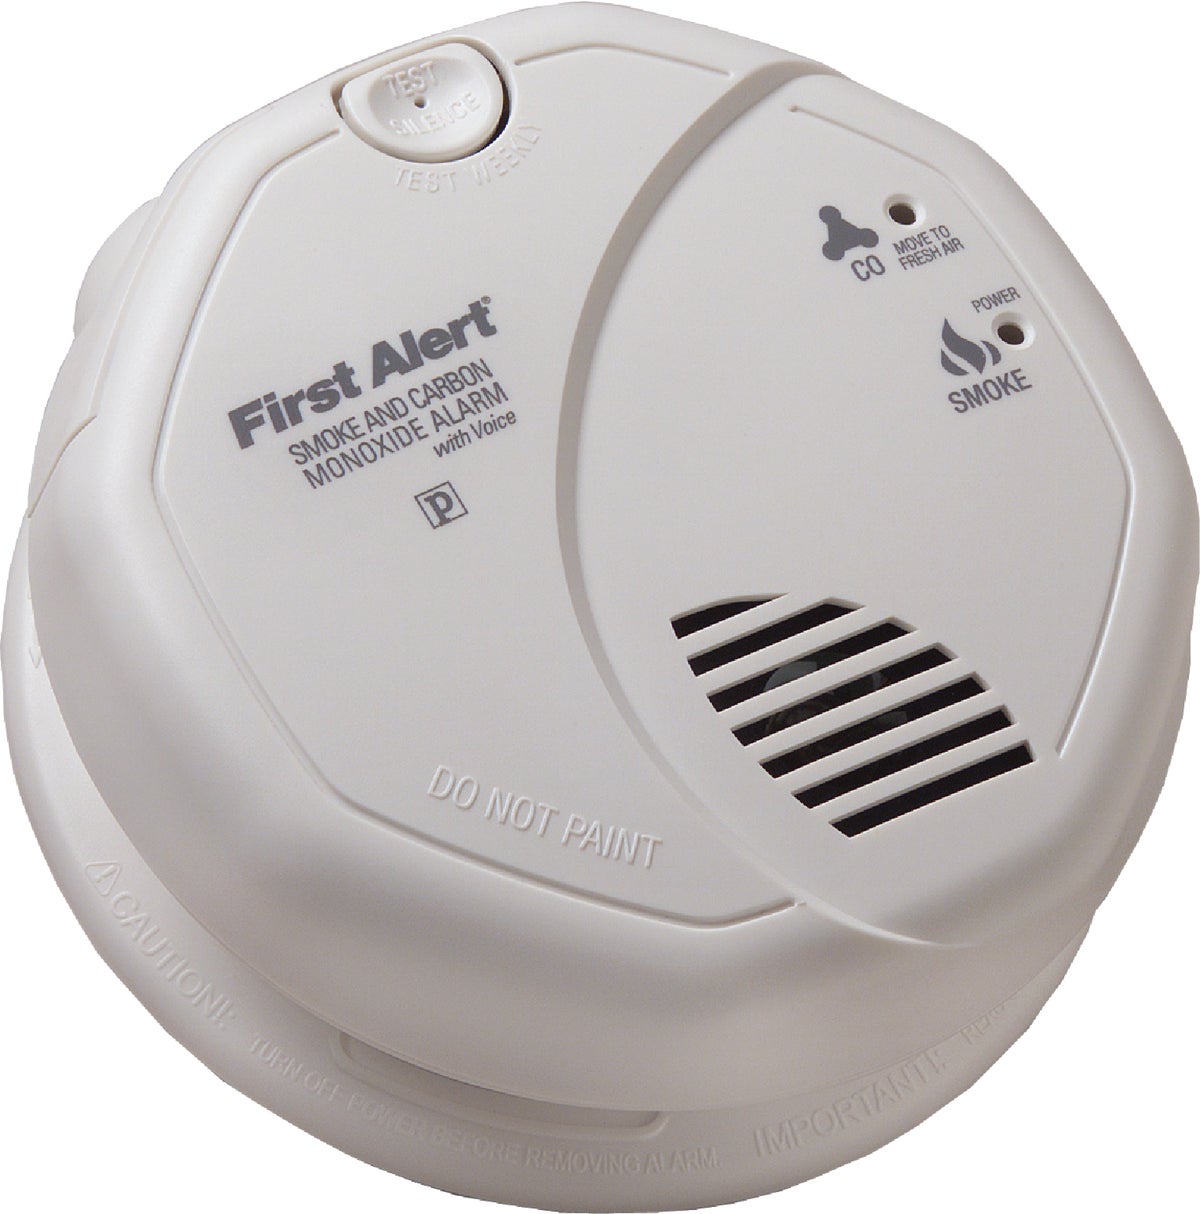 first alert carbon monoxide alarm red light stays